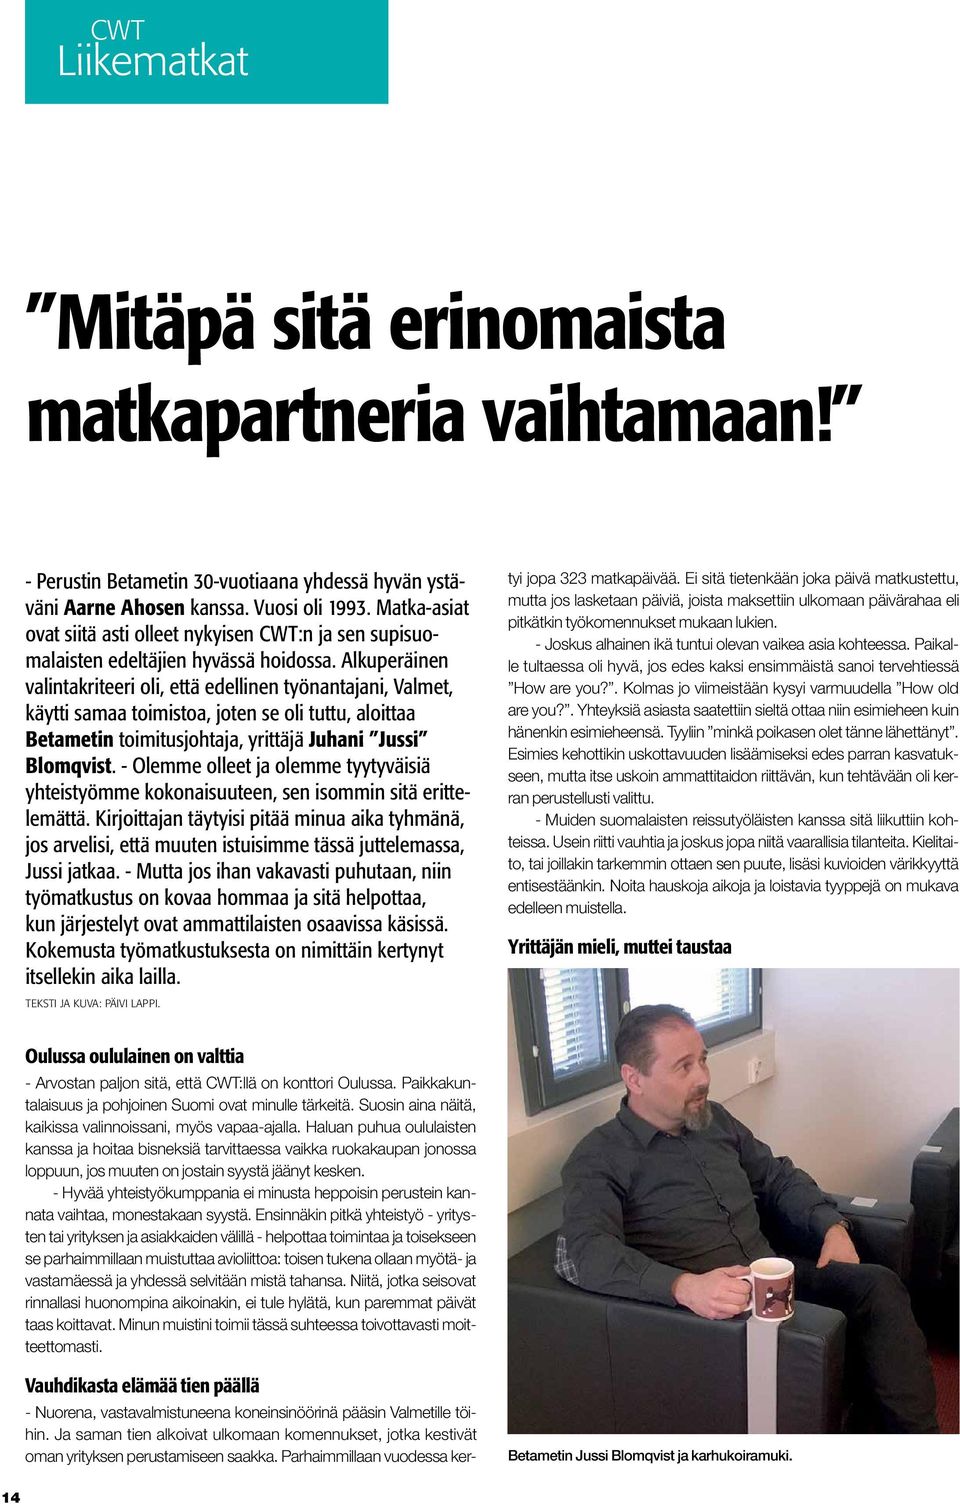 Alkuperäinen valintakriteeri oli, että edellinen työnantajani, Valmet, käytti samaa toimistoa, joten se oli tuttu, aloittaa Betametin toimitusjohtaja, yrittäjä Juhani Jussi Blomqvist.